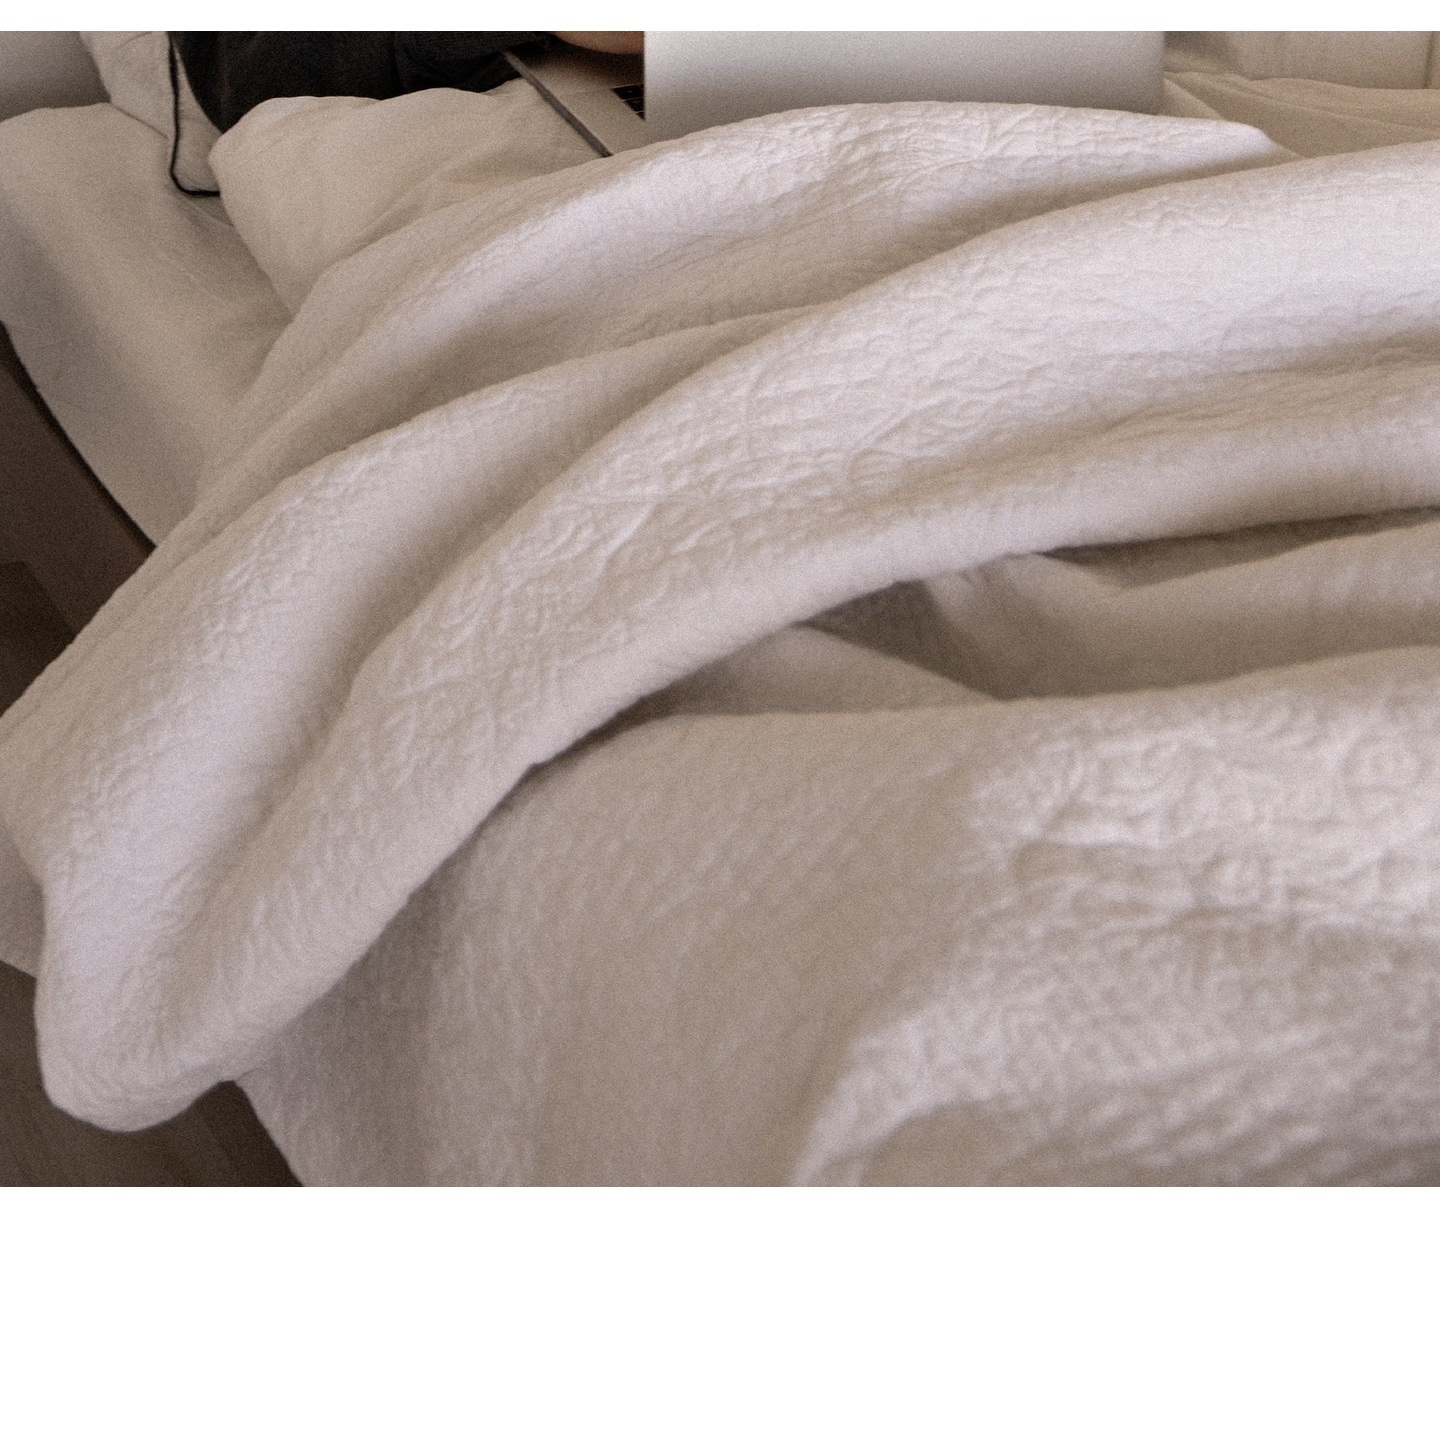 Queen-Size Bed Quilt Comforter Dry Clean